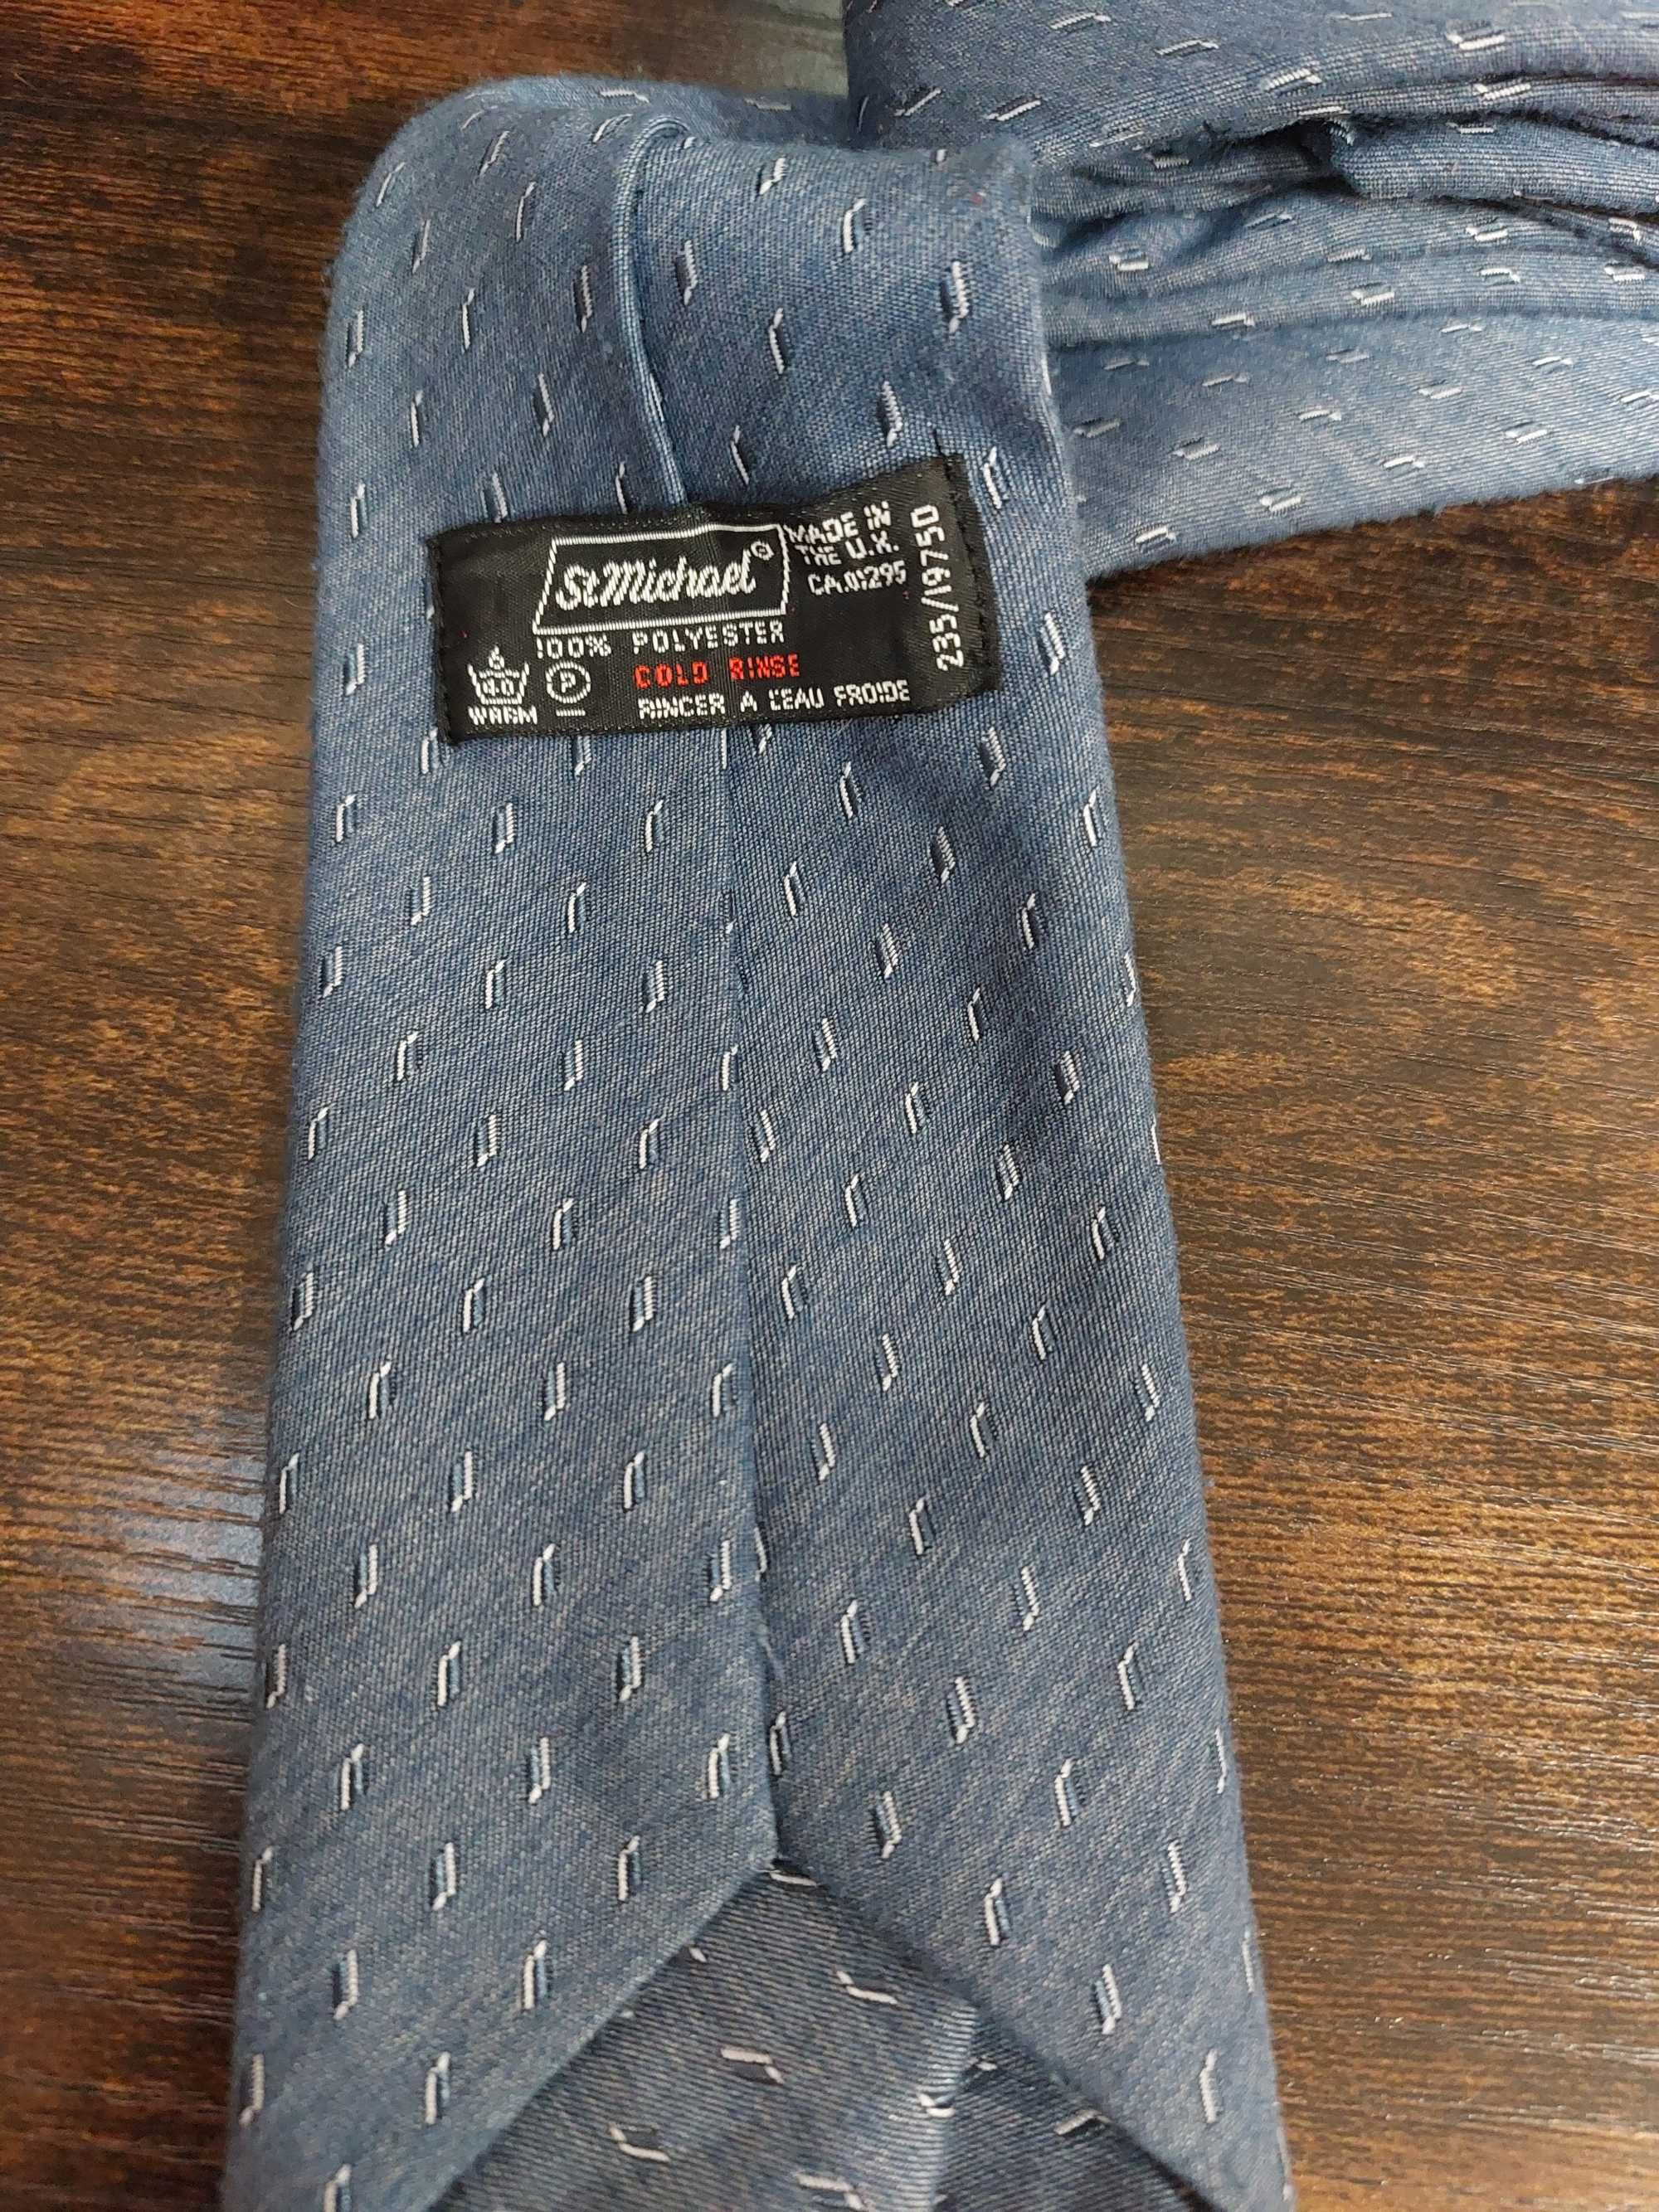 Krawat marki St. Michael